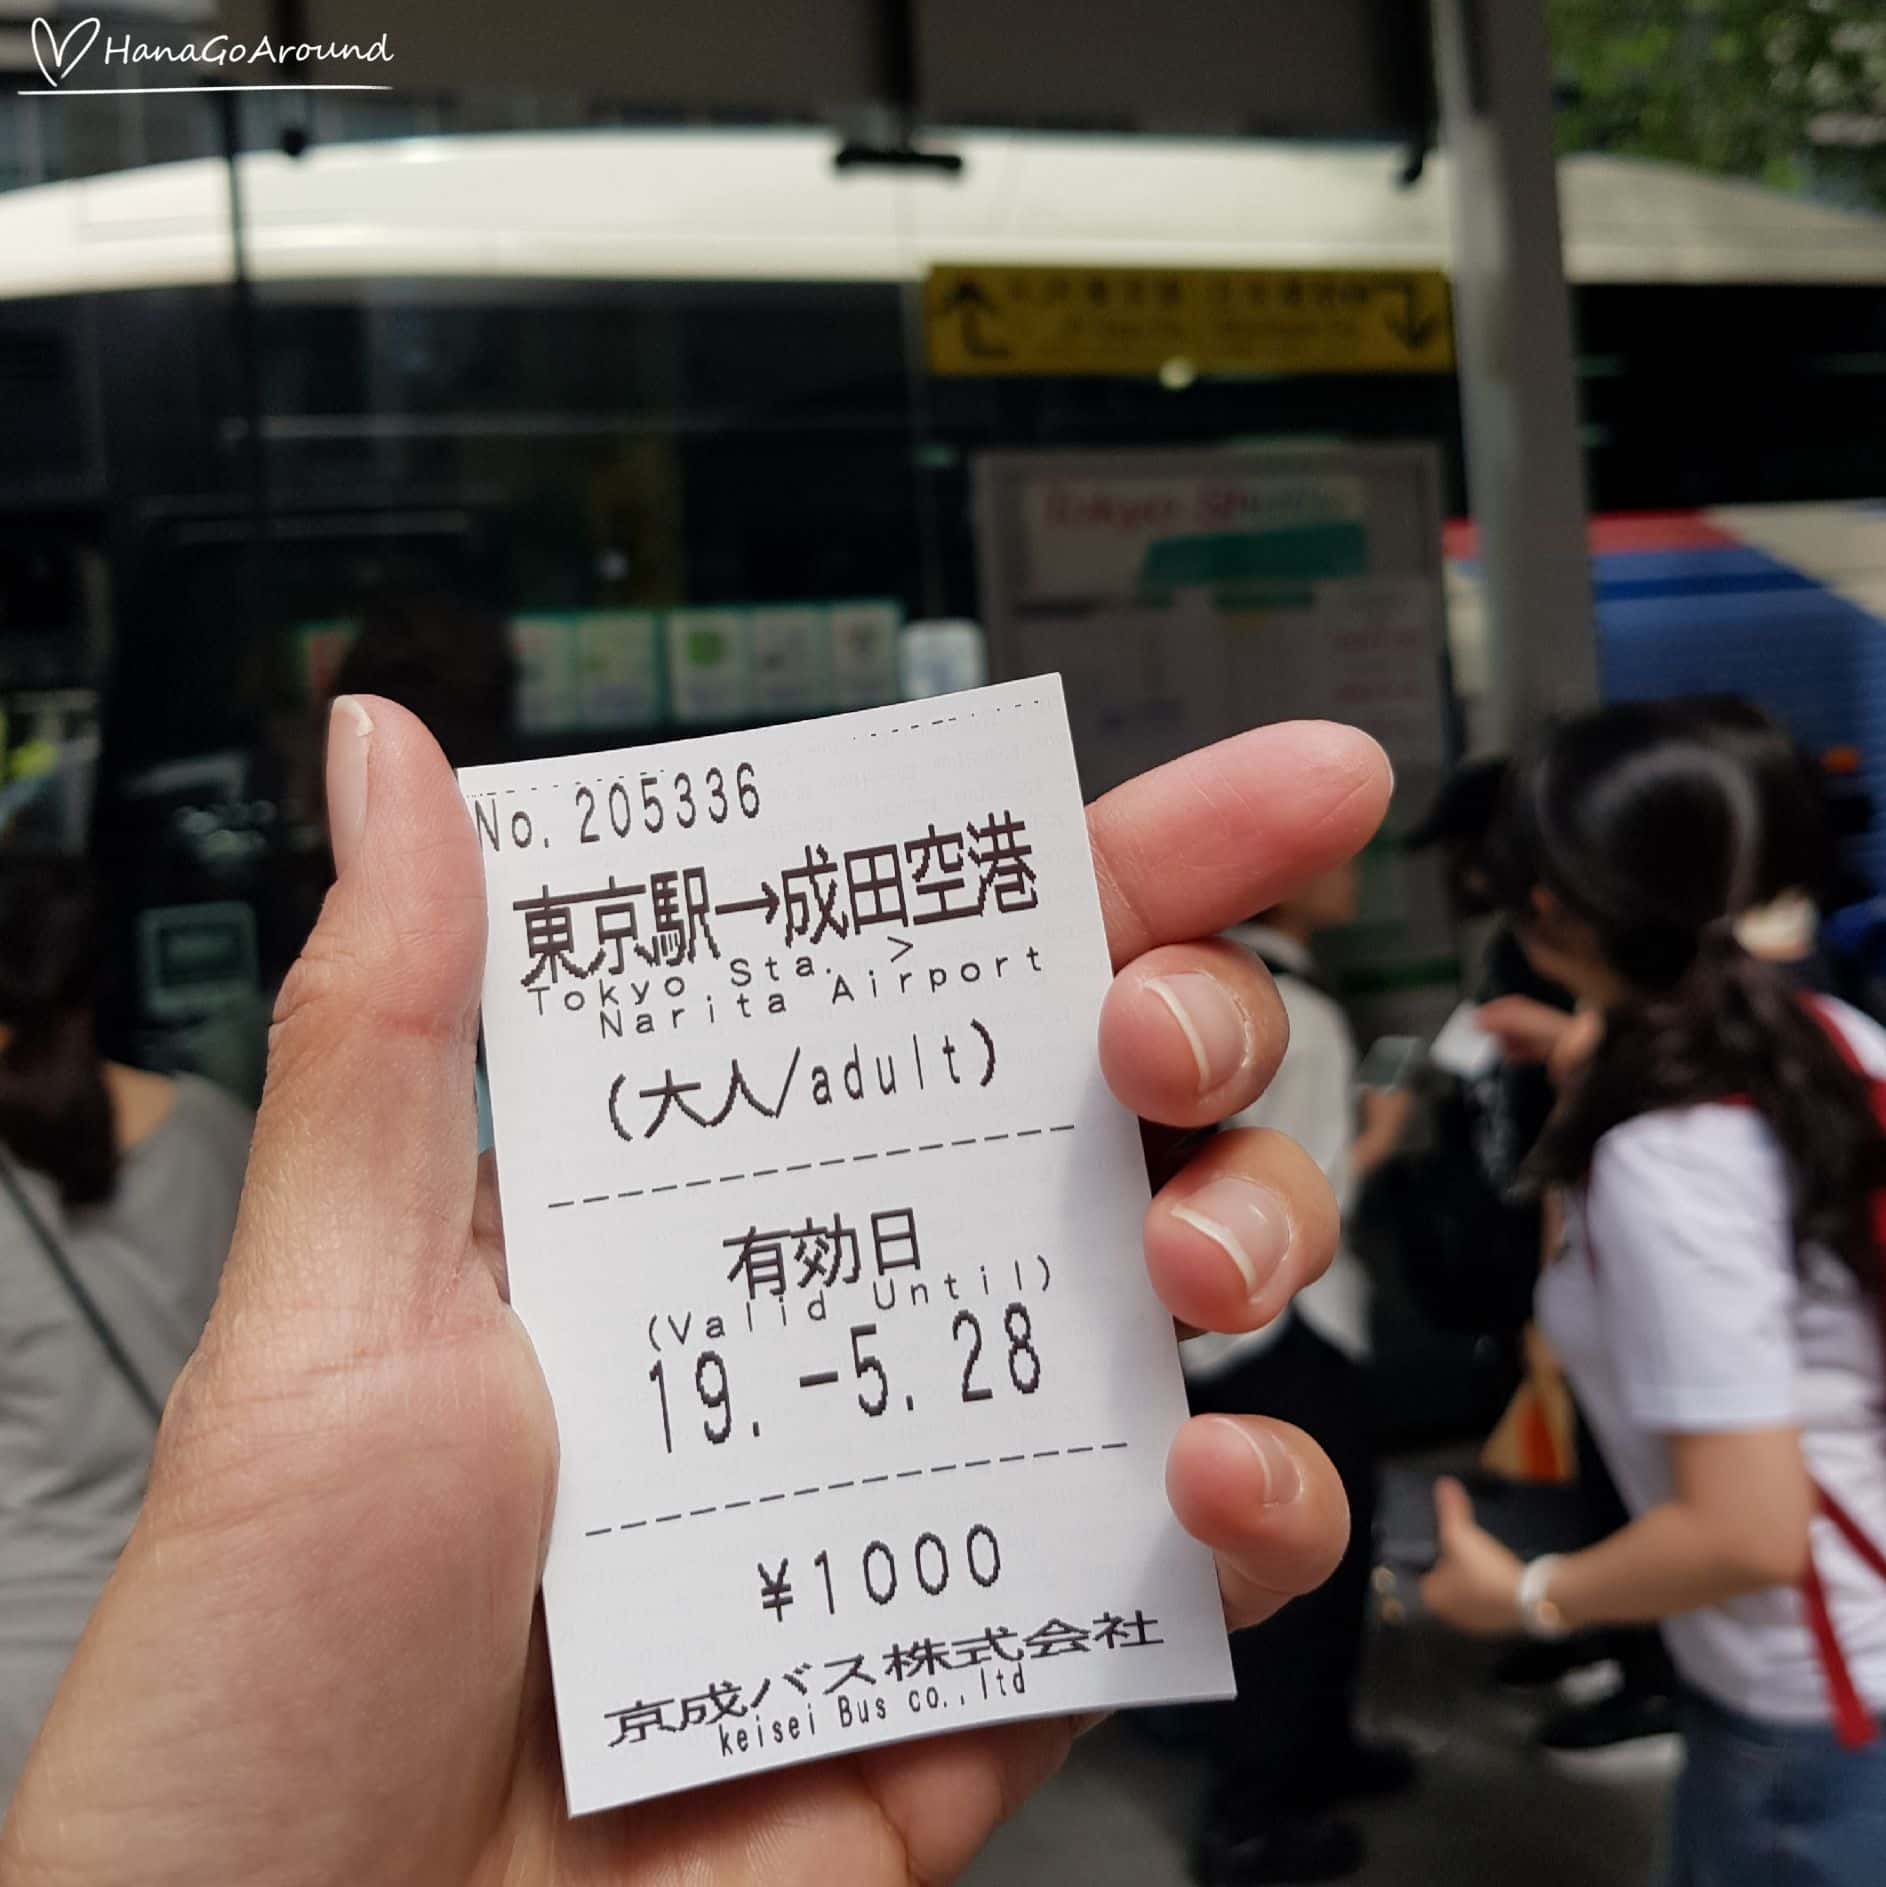 ตั๋วที่ซื้อจากตู้ซื้อตัวอัตโนมัติ Keisei Bus